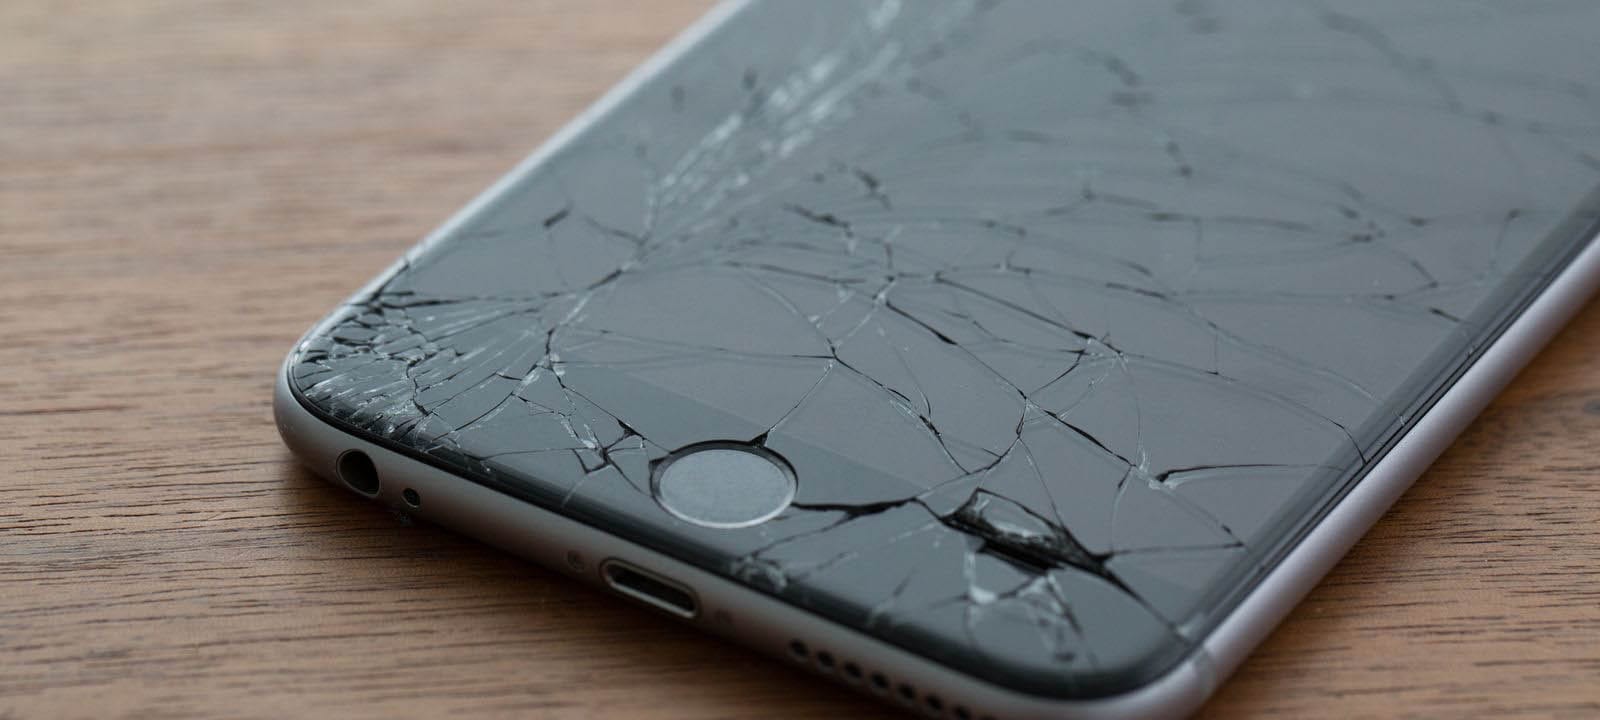 Un Footballeur De Liverpool Utilise Un Iphone Fissuré Alors Qu’il Gagne Près De 180.000€ Par Semaine